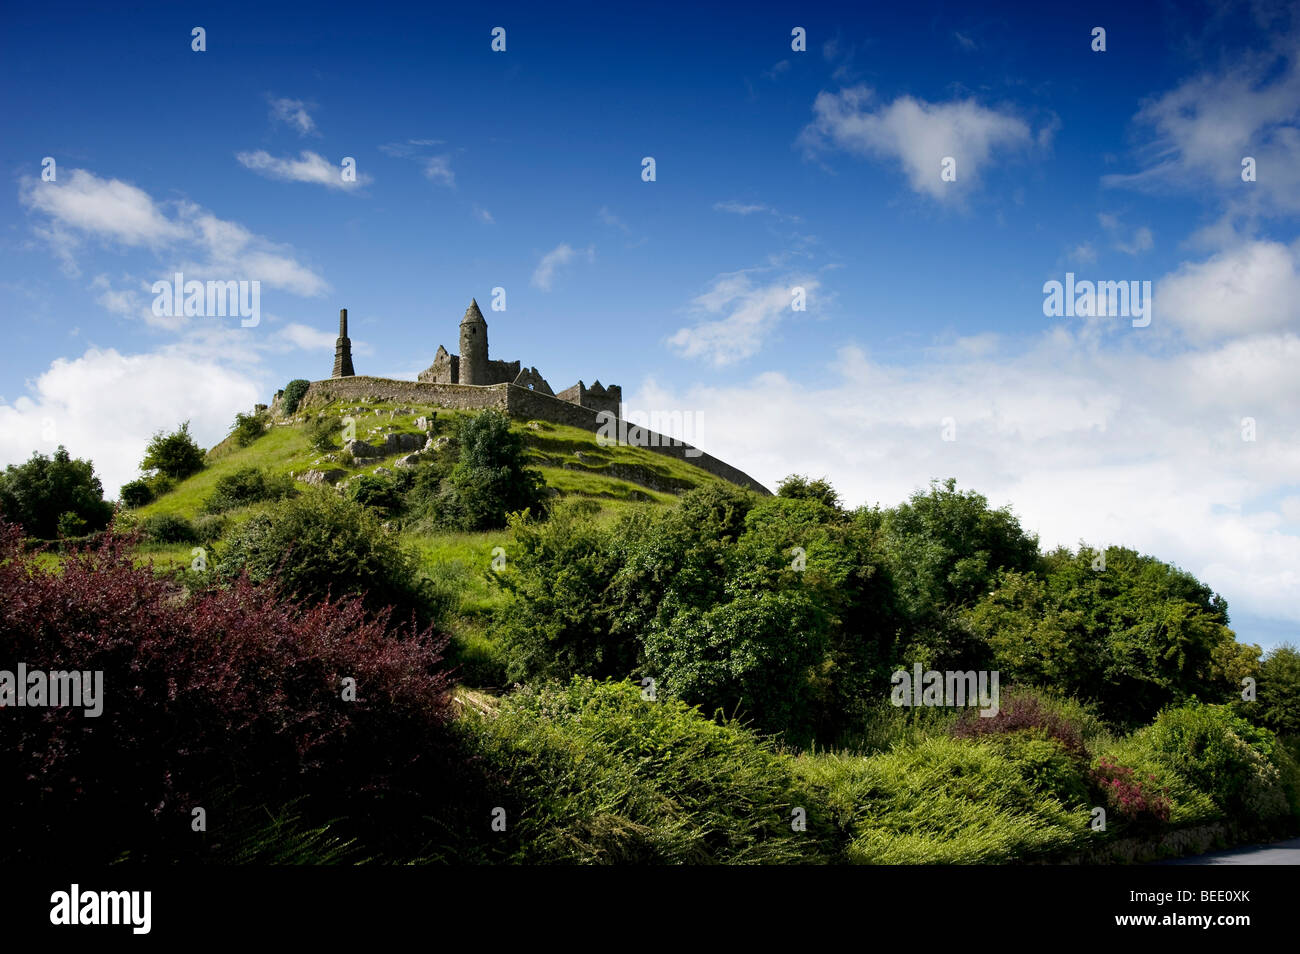 Rock of Cashel, Co Tipperary, Ireland Stock Photo